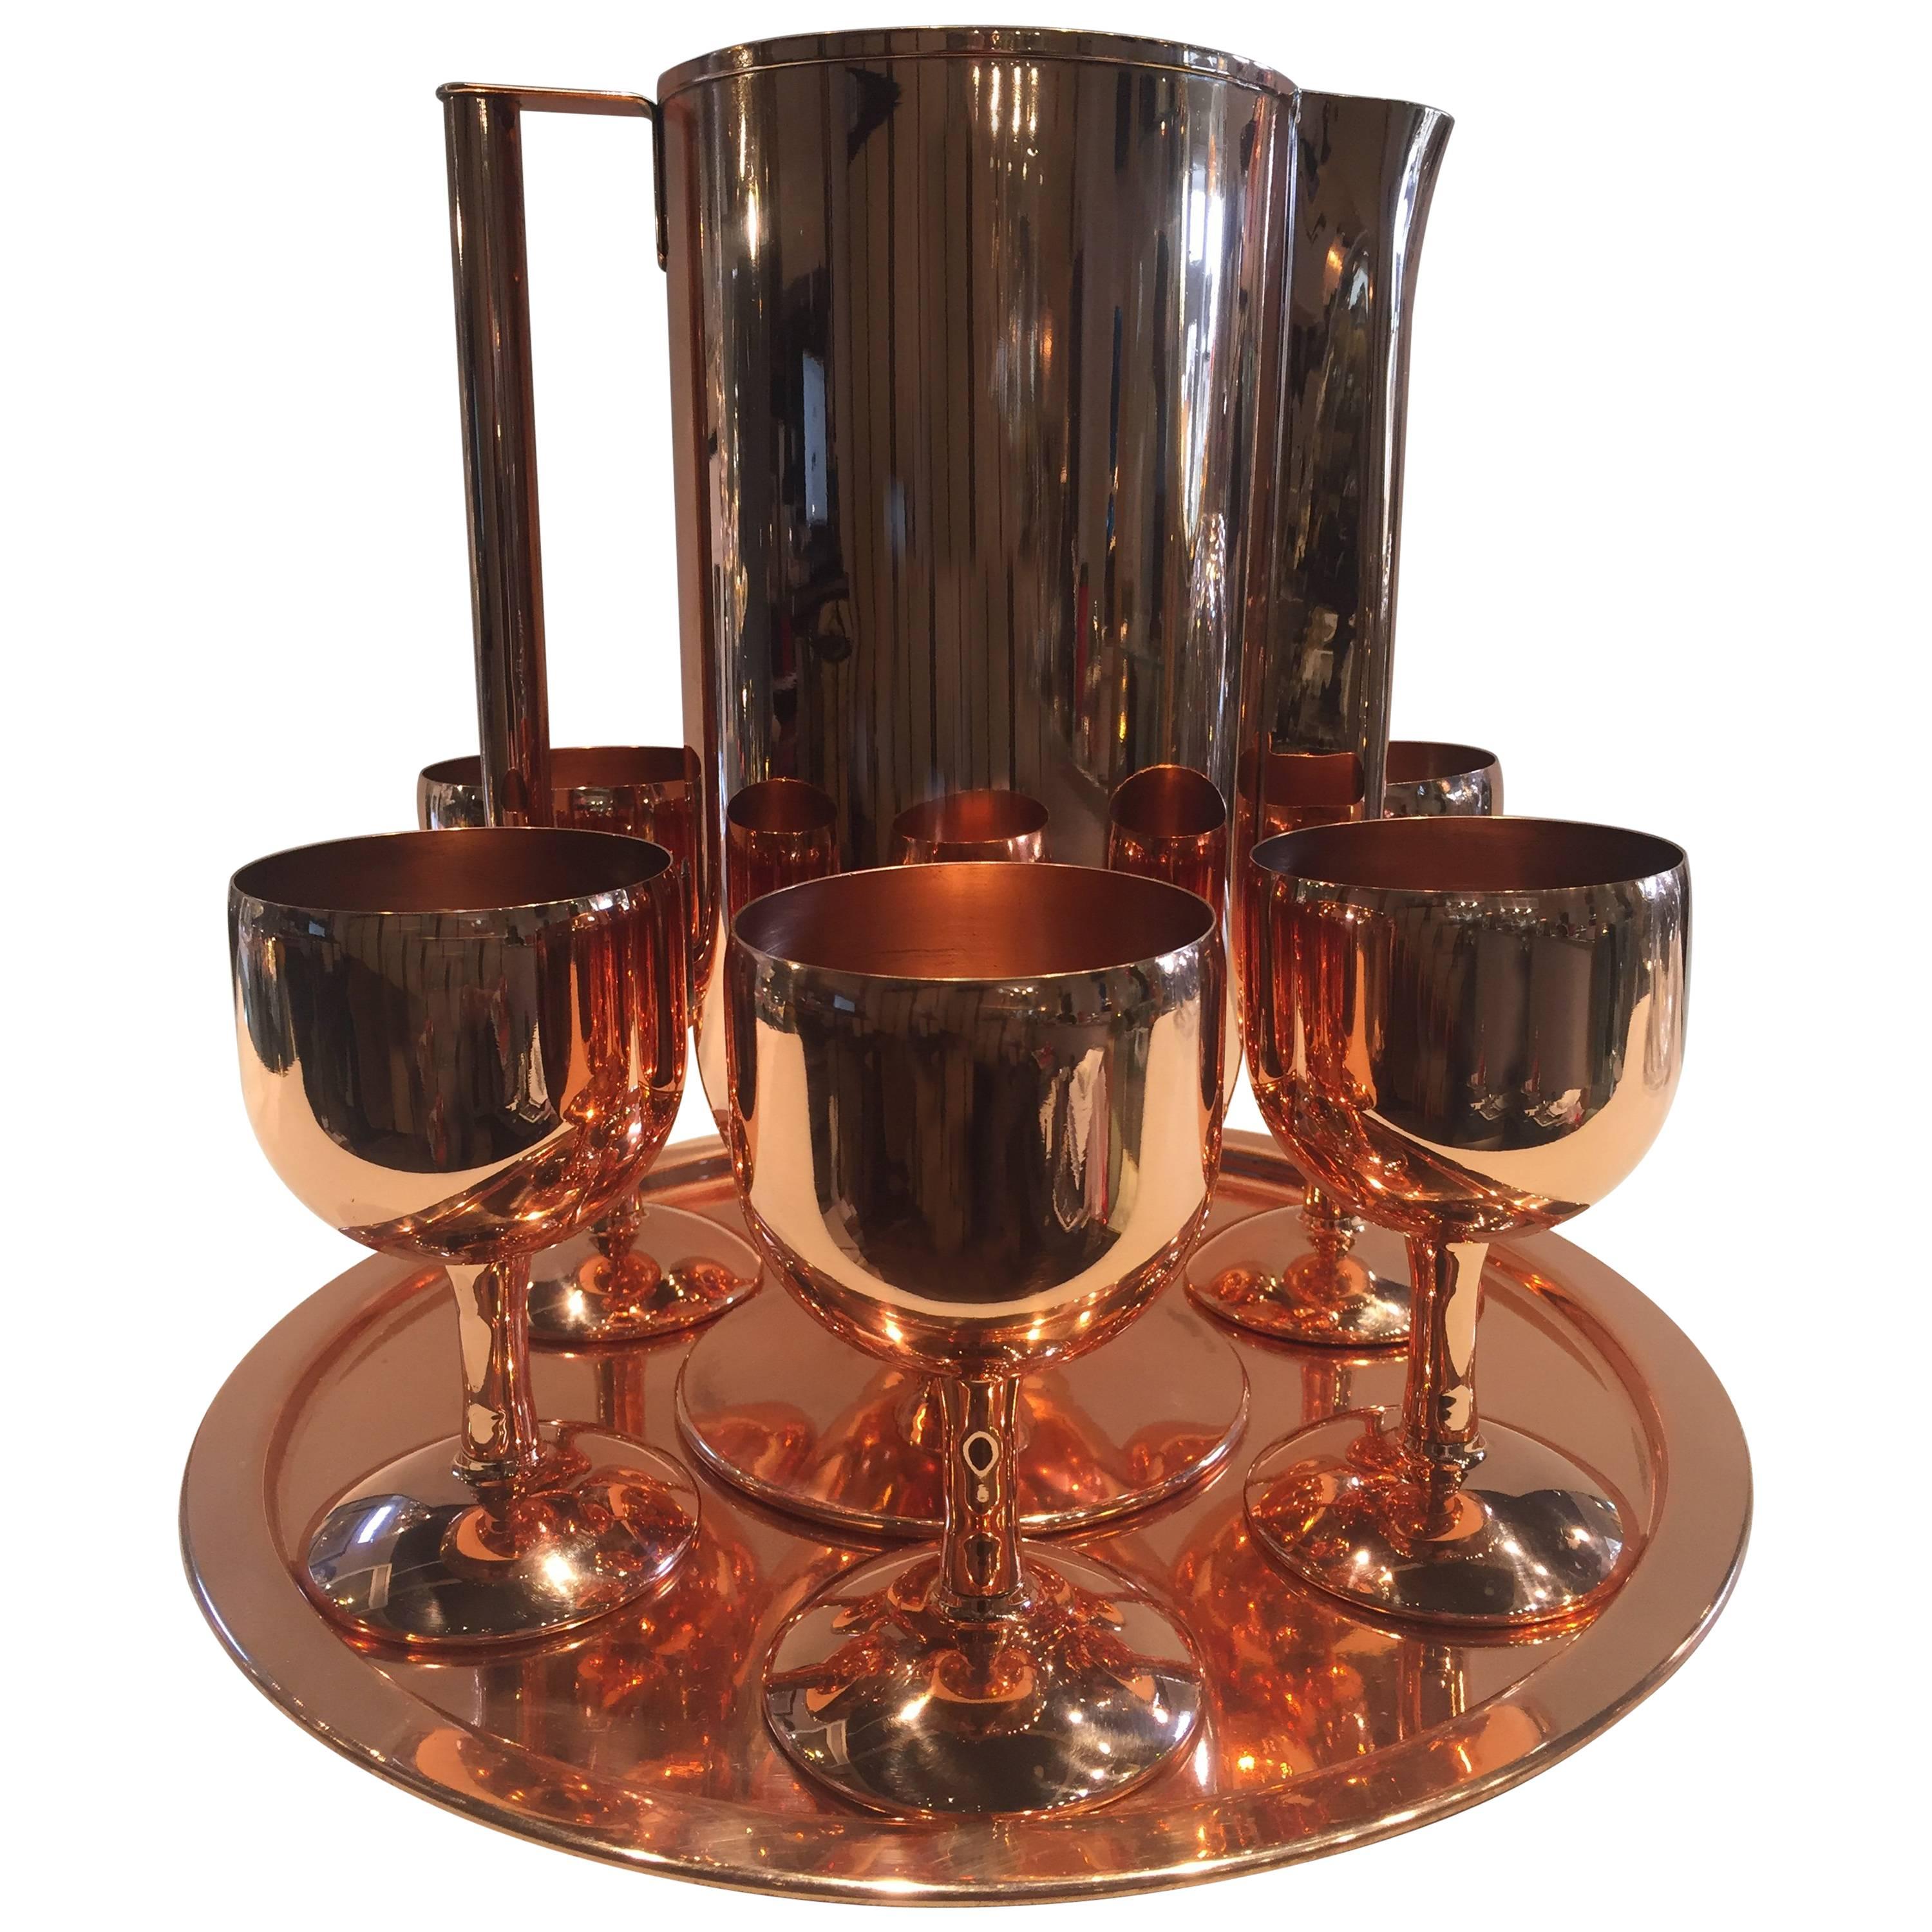 Norman Bel Geddes Copper Art Deco Cocktail or Drinks Set